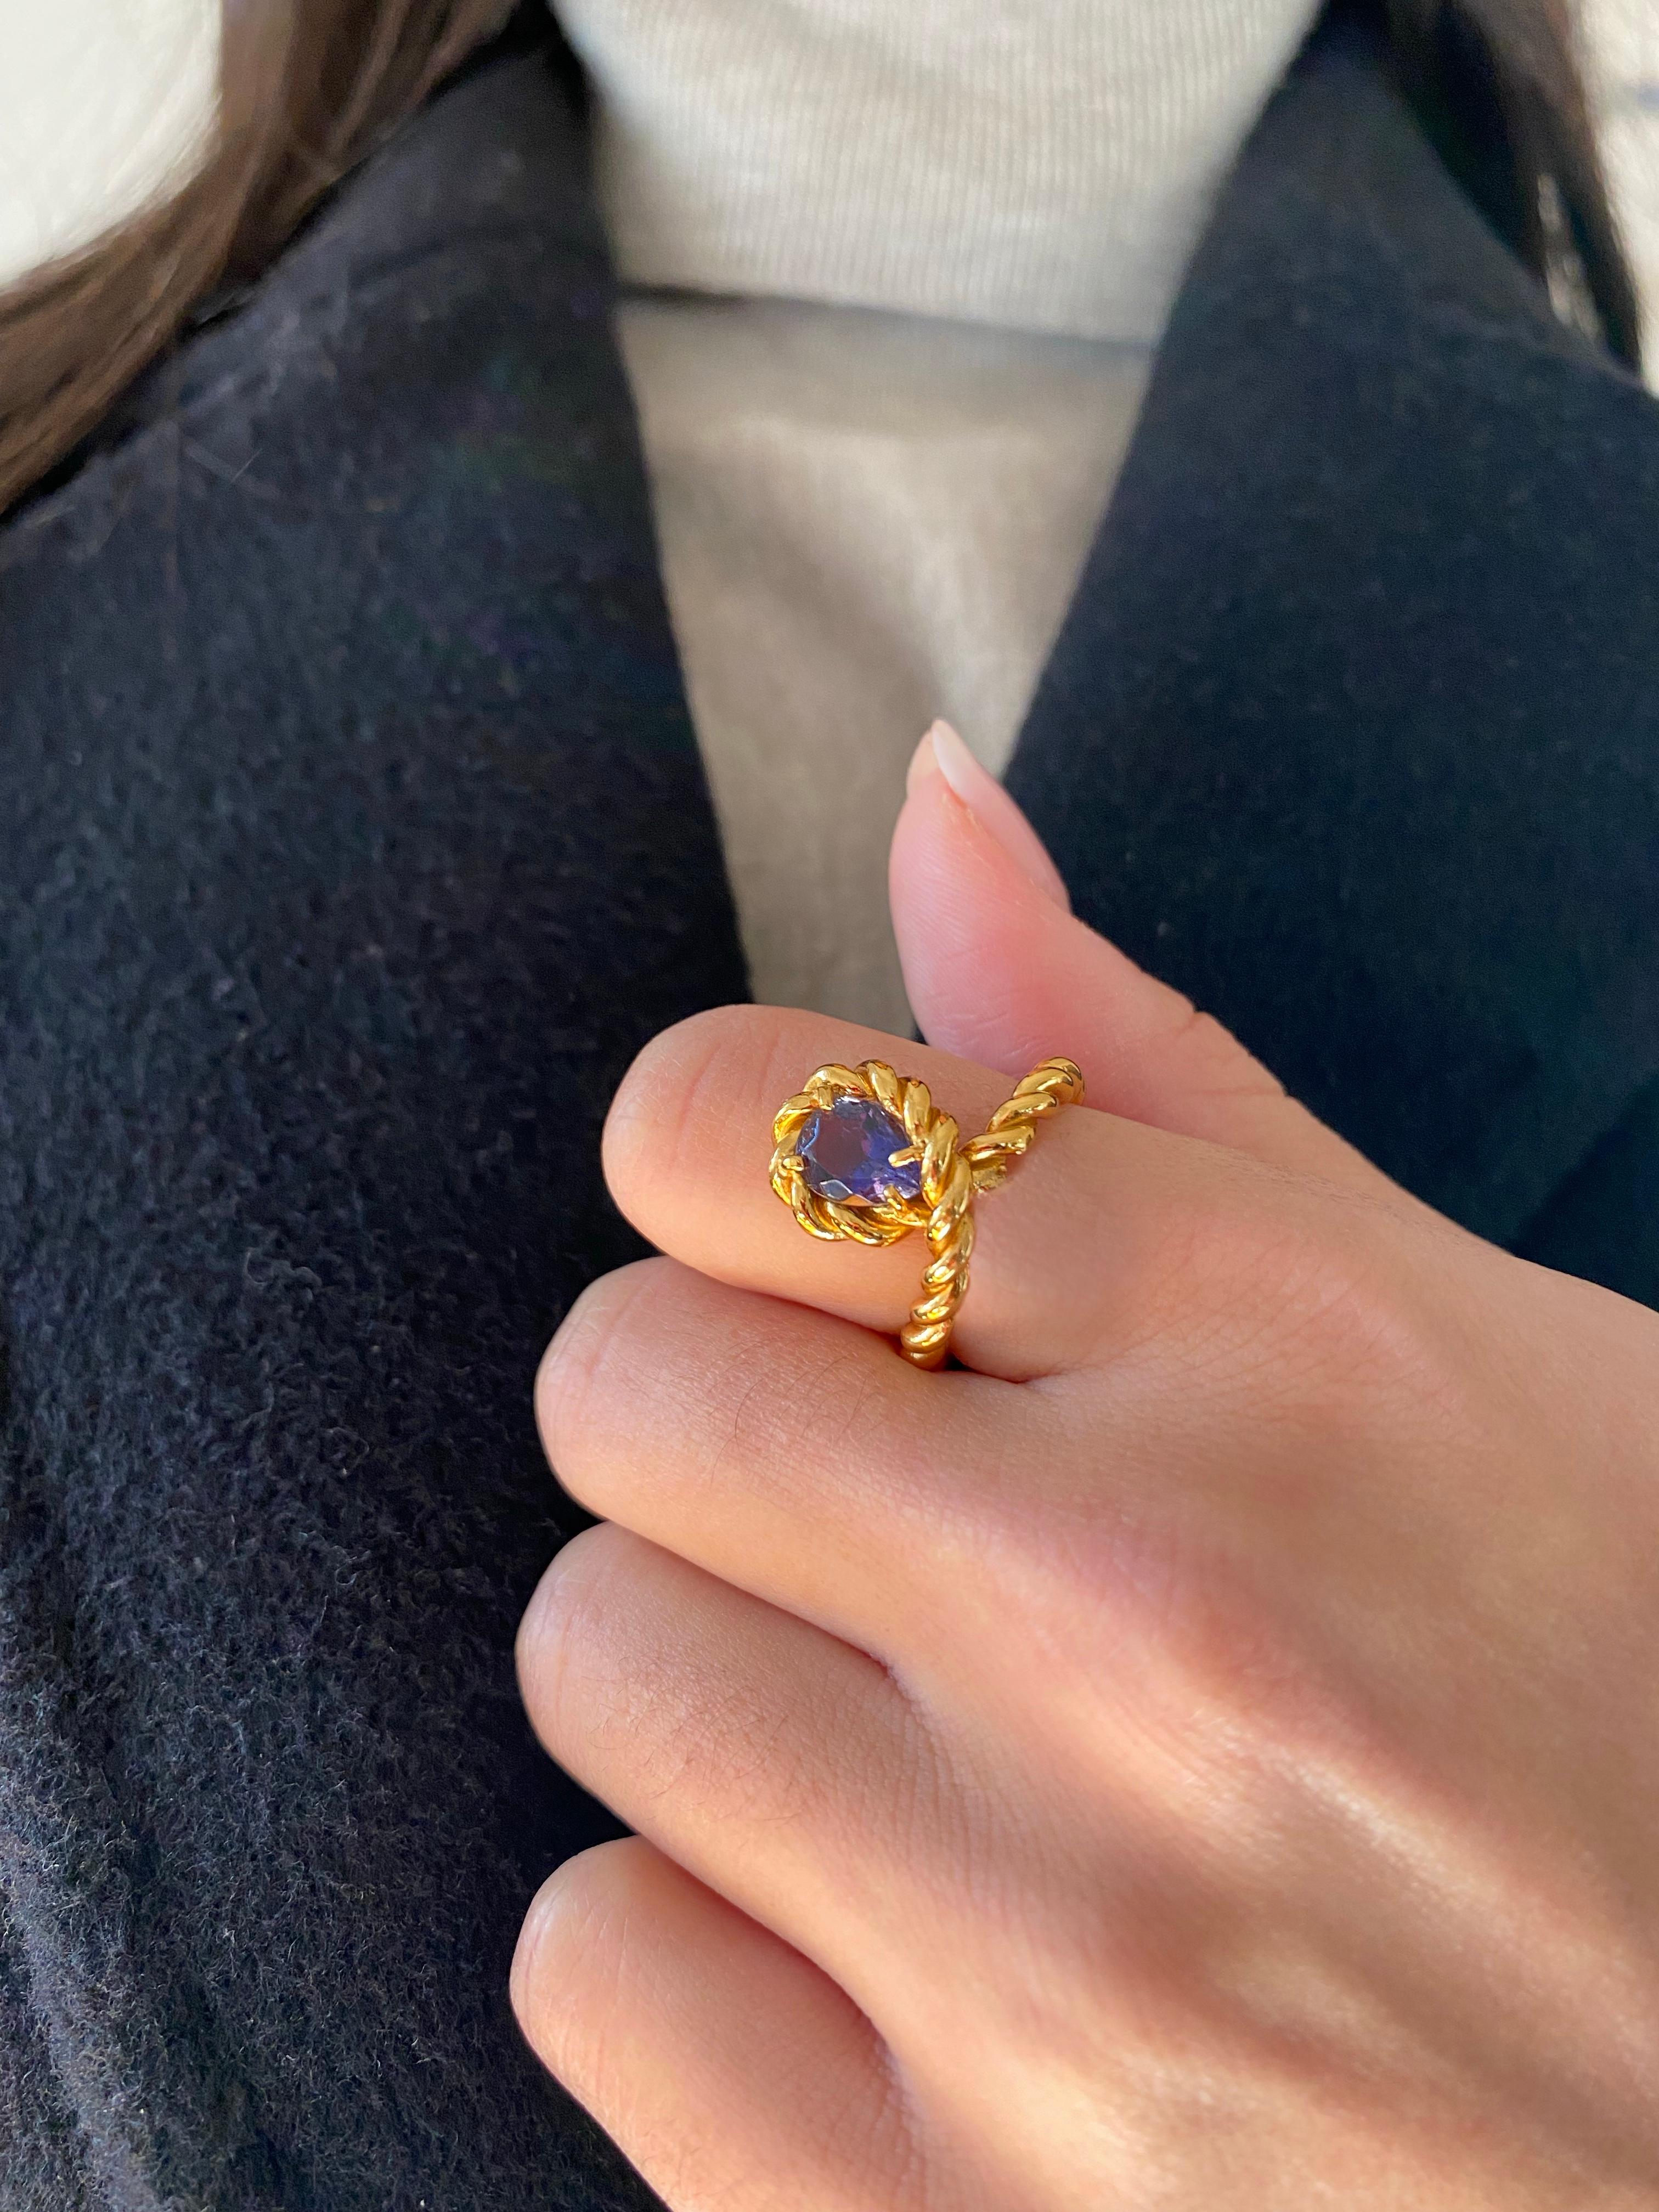 Rossella Ugolini Design Collection ein schöner Ring mit Iolith-Design, handgefertigt mit einem gedrehten Seil aus 18 Karat Gelbgold  die eine einzelne Linie um den Finger bildet und den tiefblauen Iolith im Birnenschliff umgibt. Elegantes und